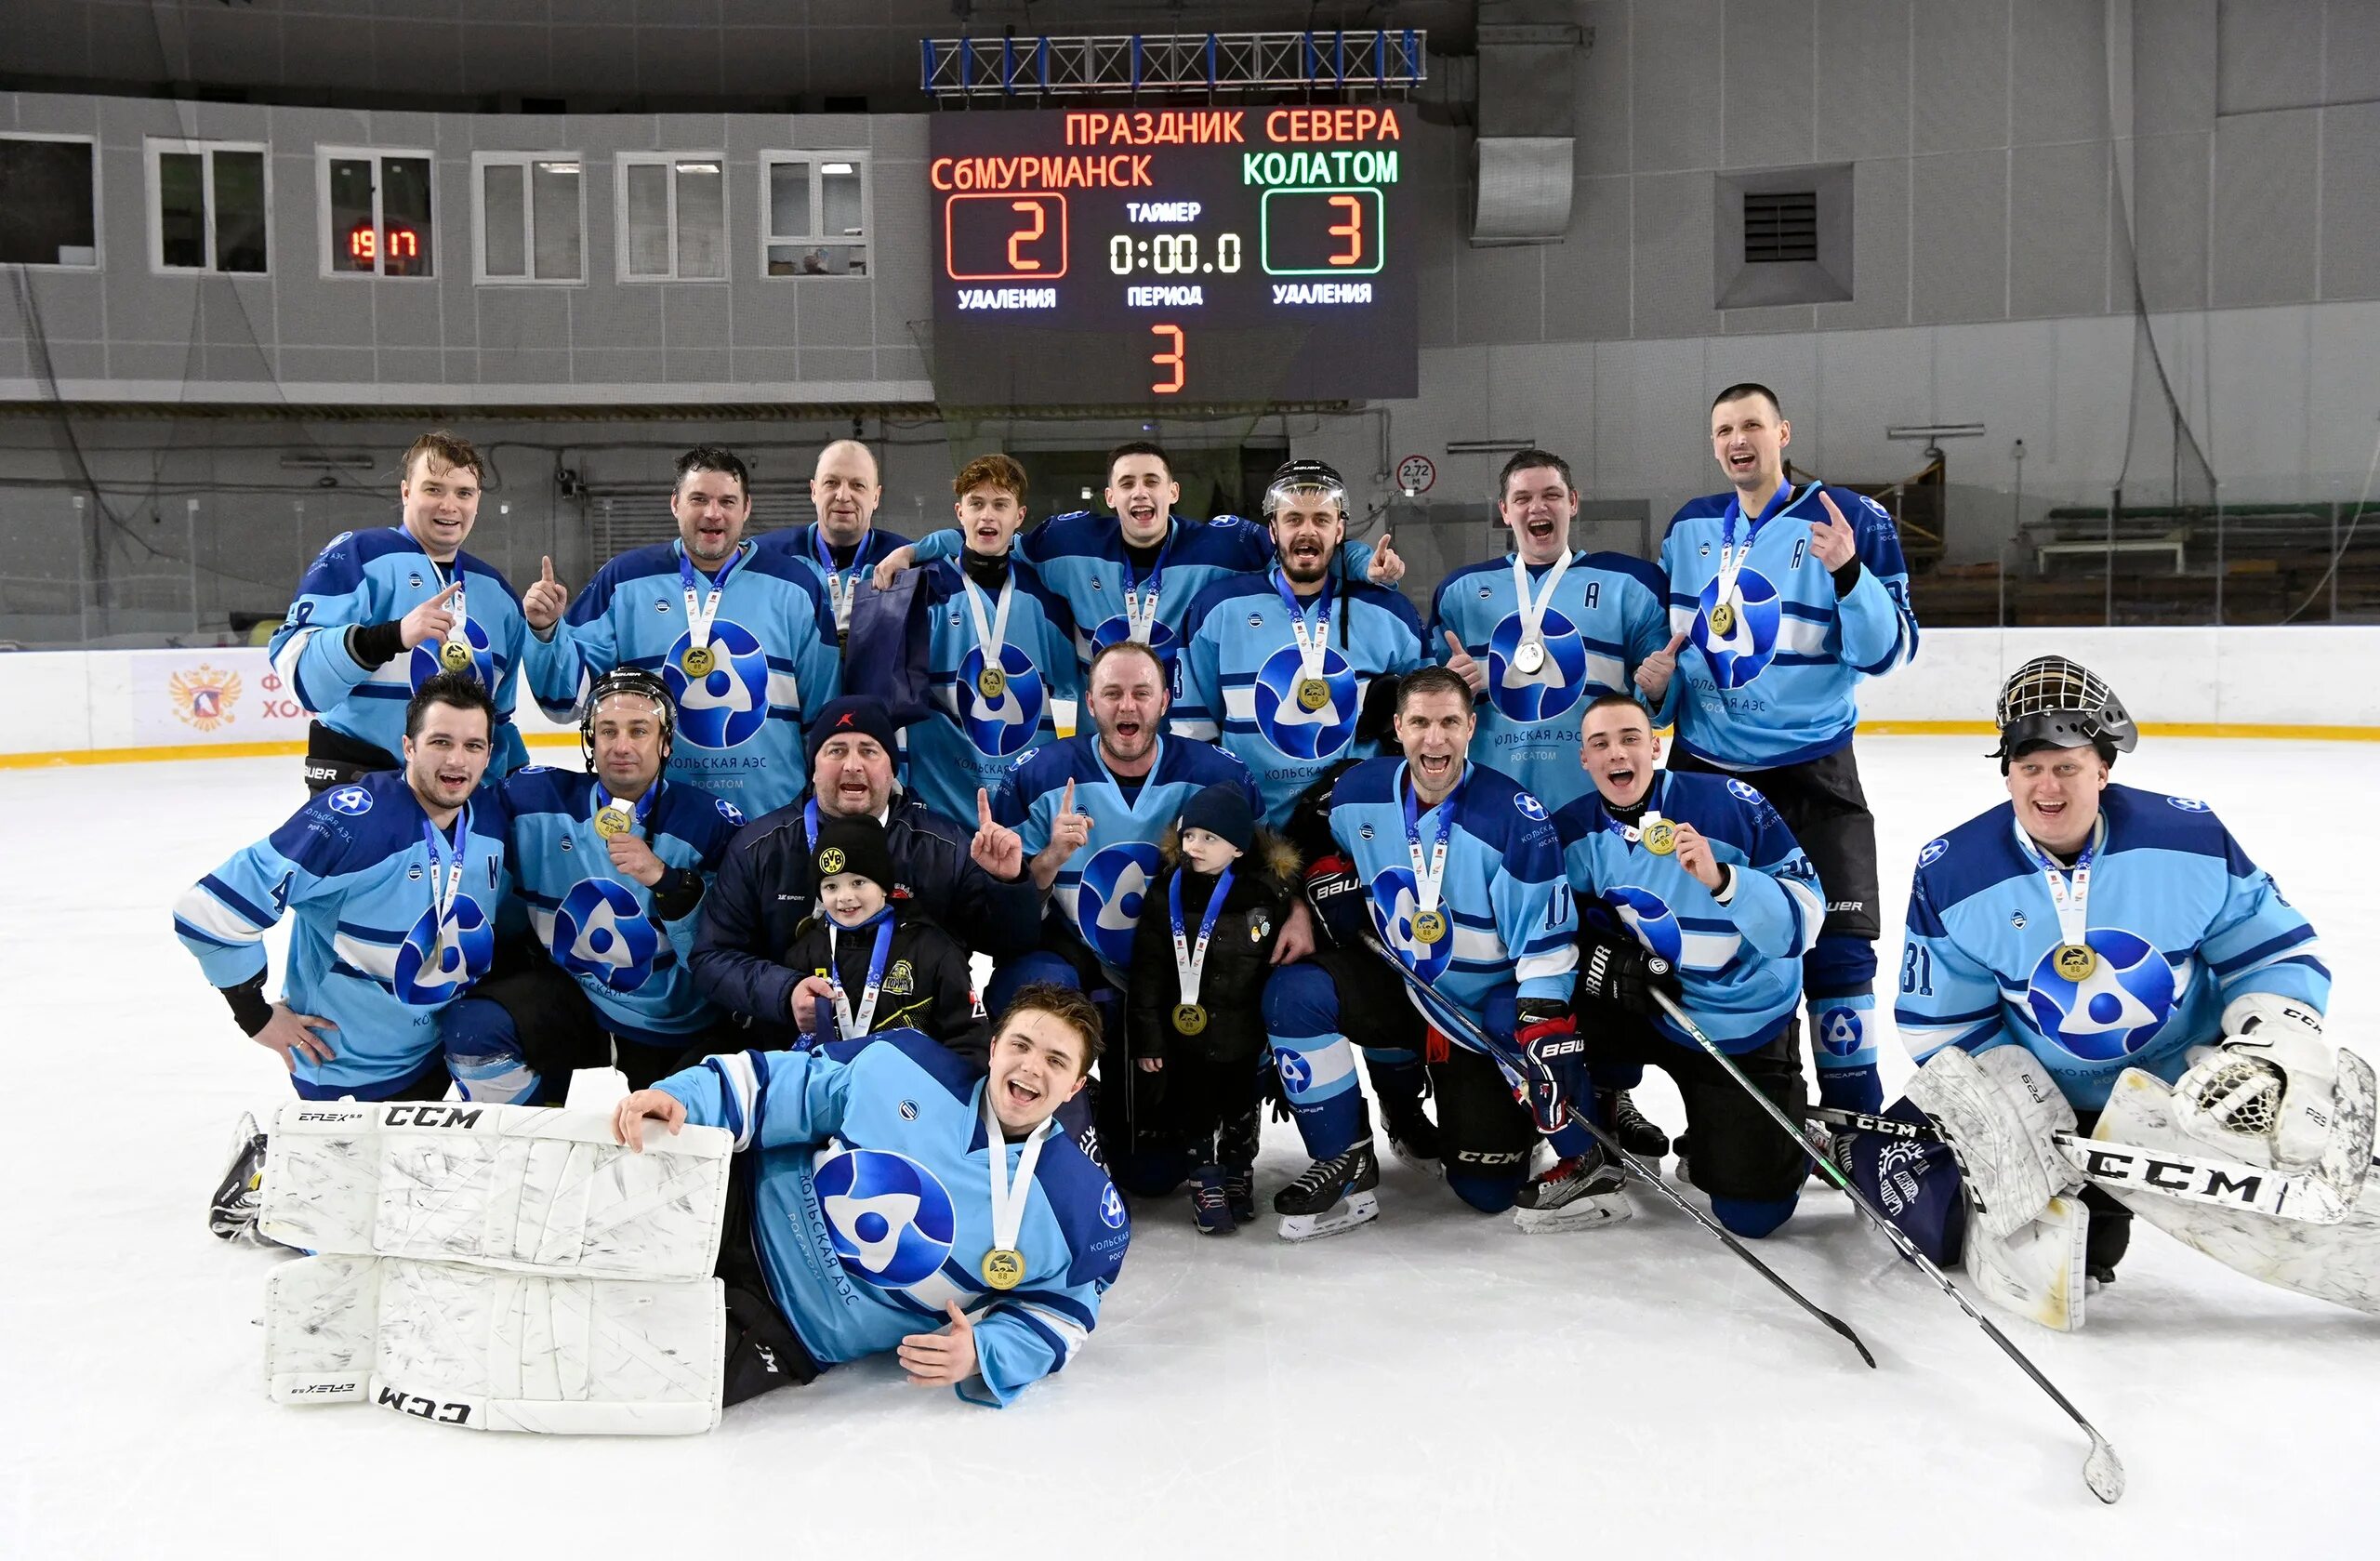 Ледовый дворец мурманск сайт. Мурманск хоккейная команда. Хоккейные сборные. Хоккеисты Мурманска. Фото хоккеистов.